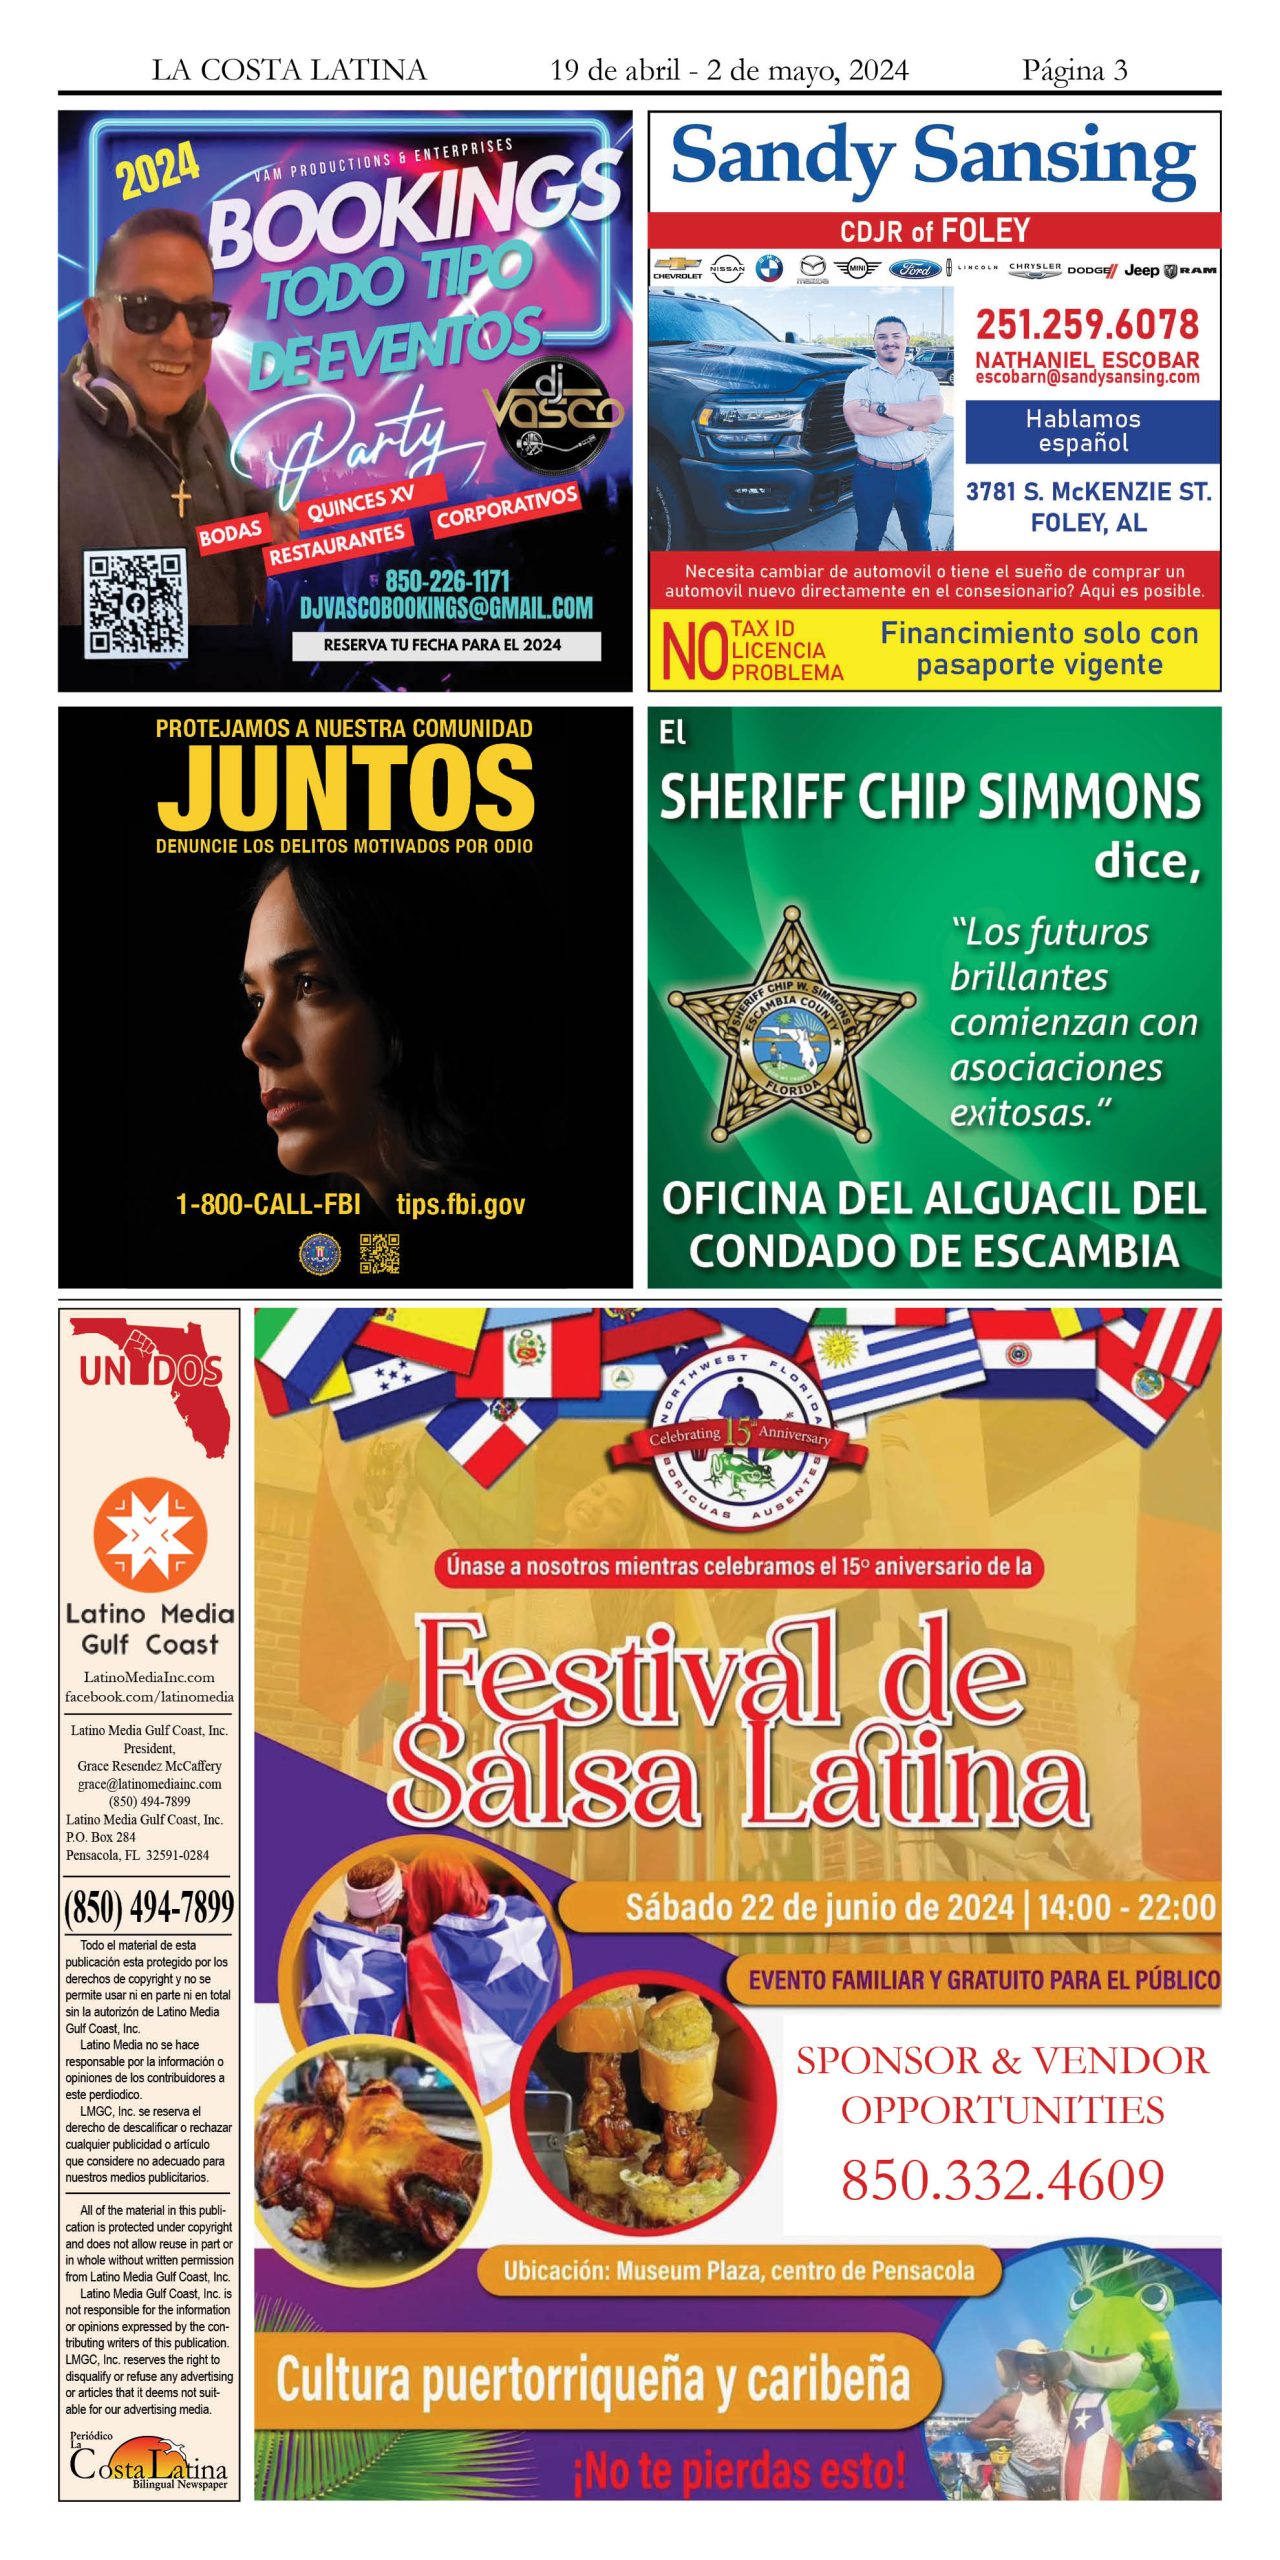 La Costa Latina April 19 - May 2, 2024 page 3